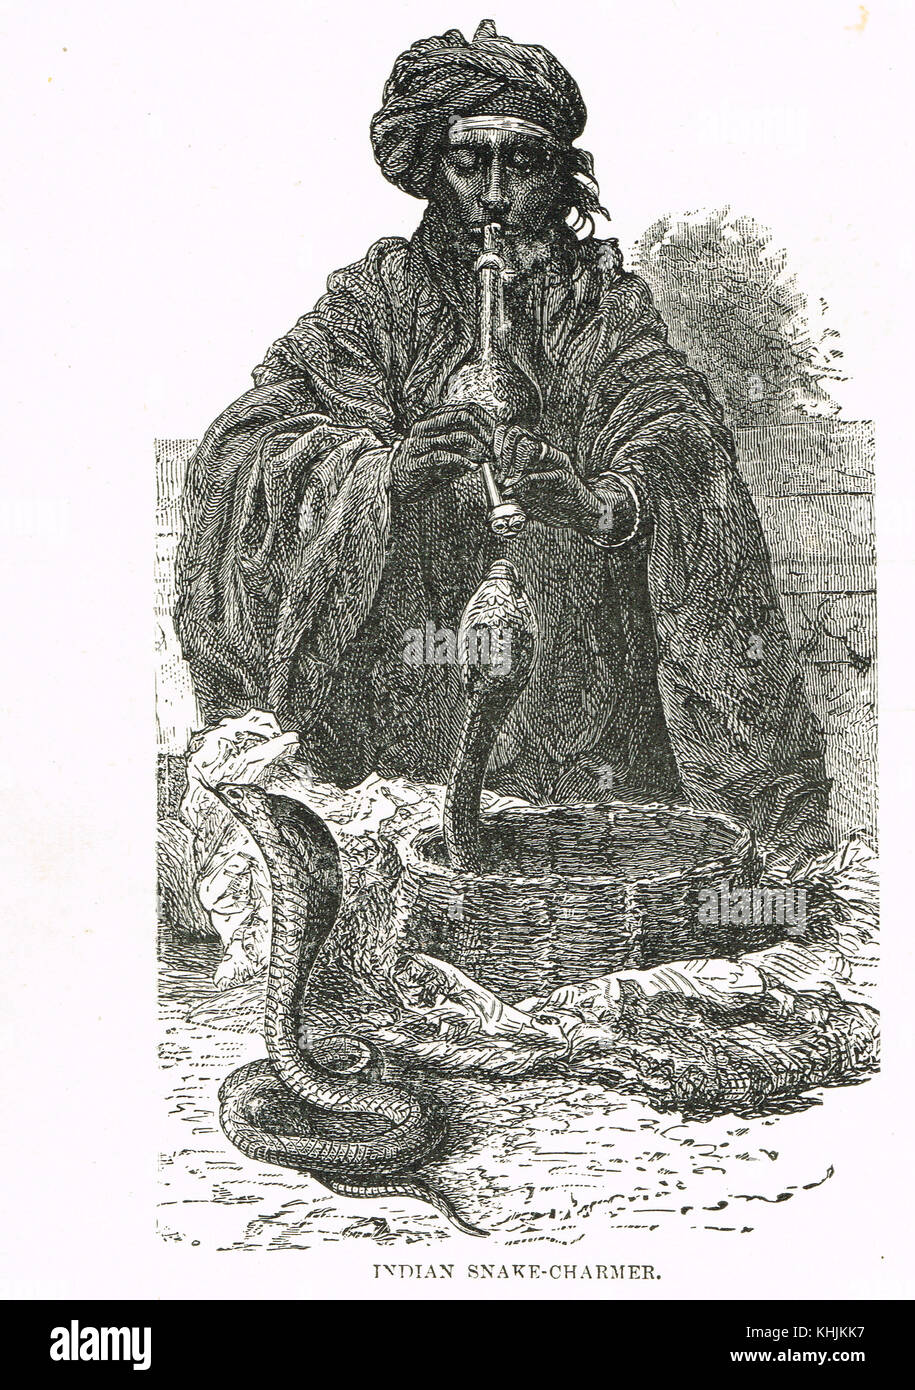 Un charmer de serpent indien, 19e siècle Banque D'Images